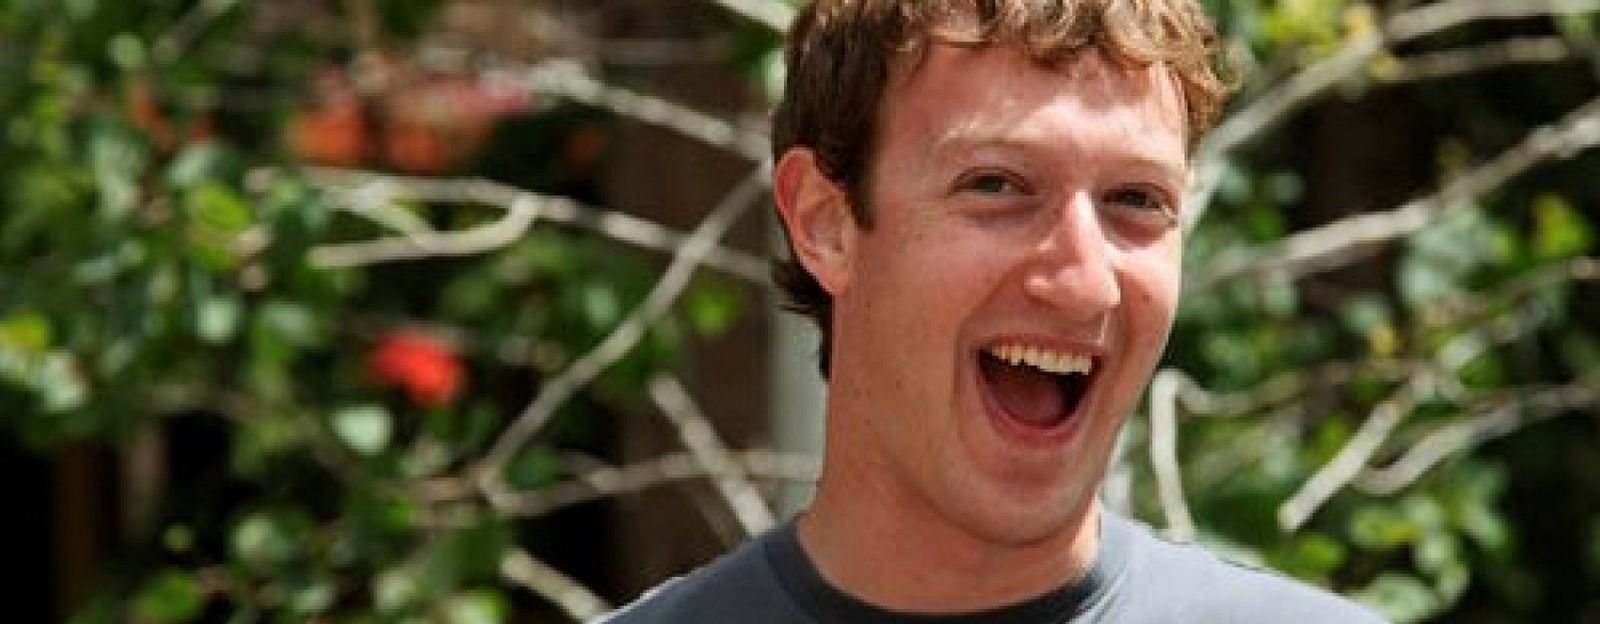 Foto: Facebook compra la red social móvil Instagram por 1.000 millones de dólares